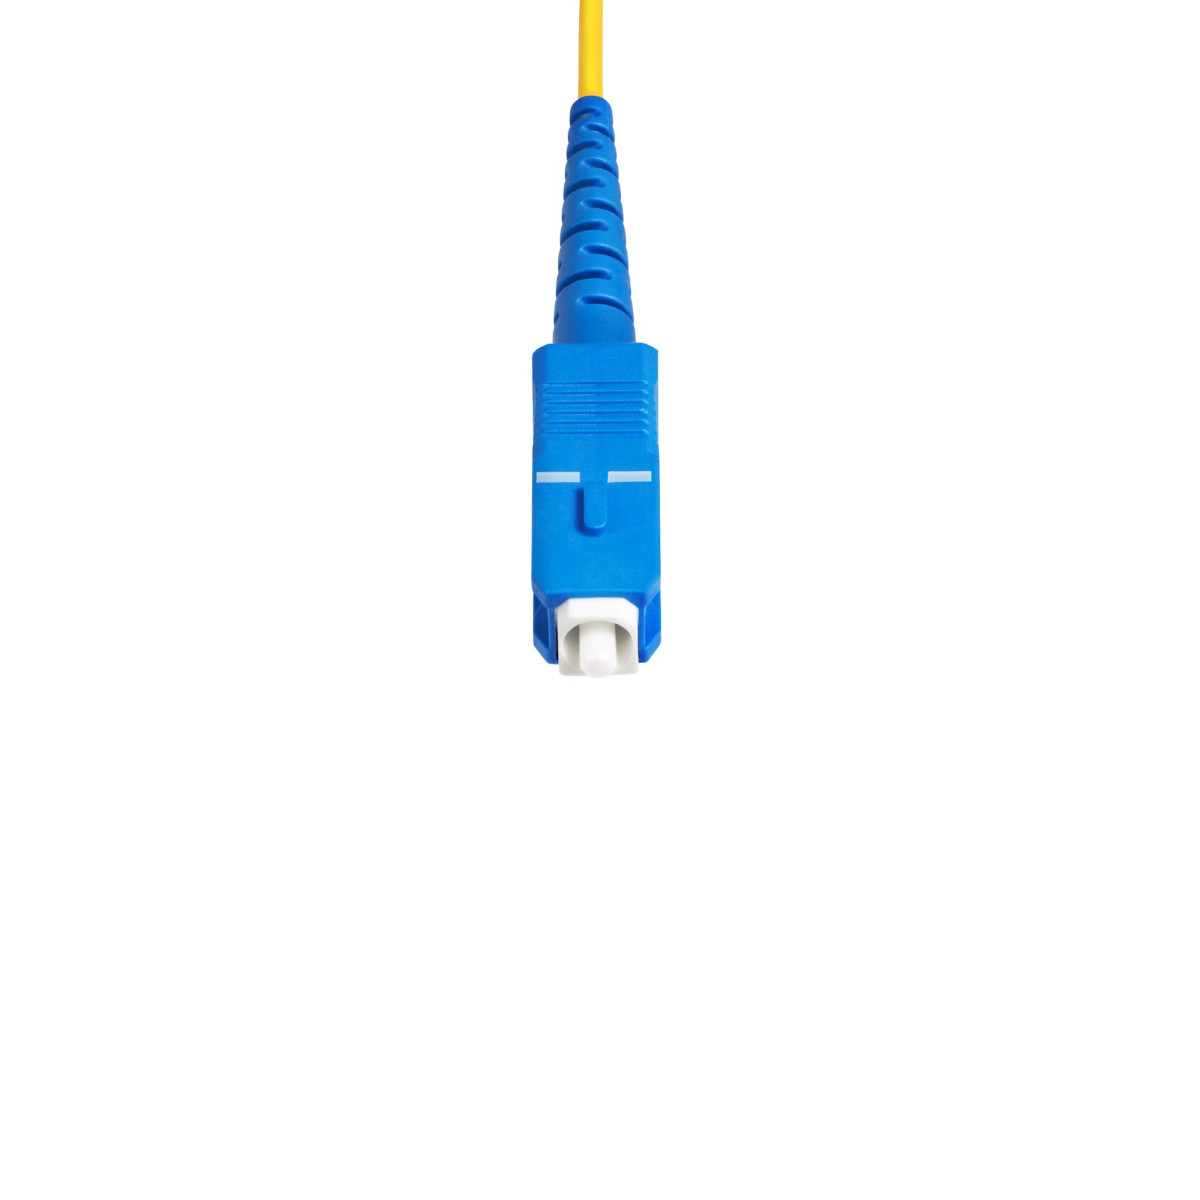 100m SC/SC OS2 Single Mode Fiber Cable